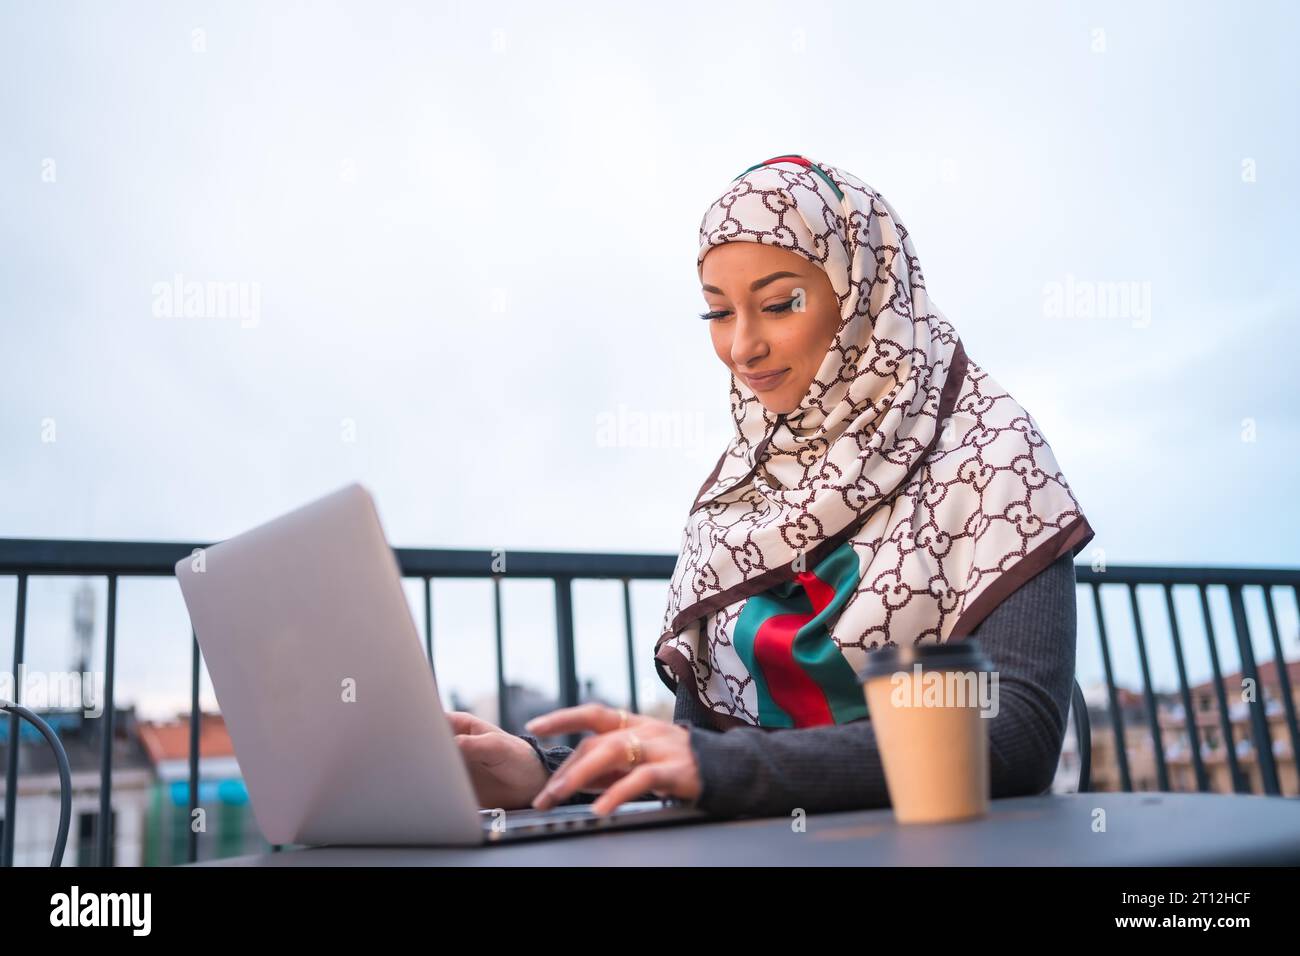 Fille arabe dans un voile blanc à l'ordinateur sur la terrasse d'un magasin de café, faisant un appel vidéo. Jeune homme arabe moderne avec les nouvelles technologies Banque D'Images